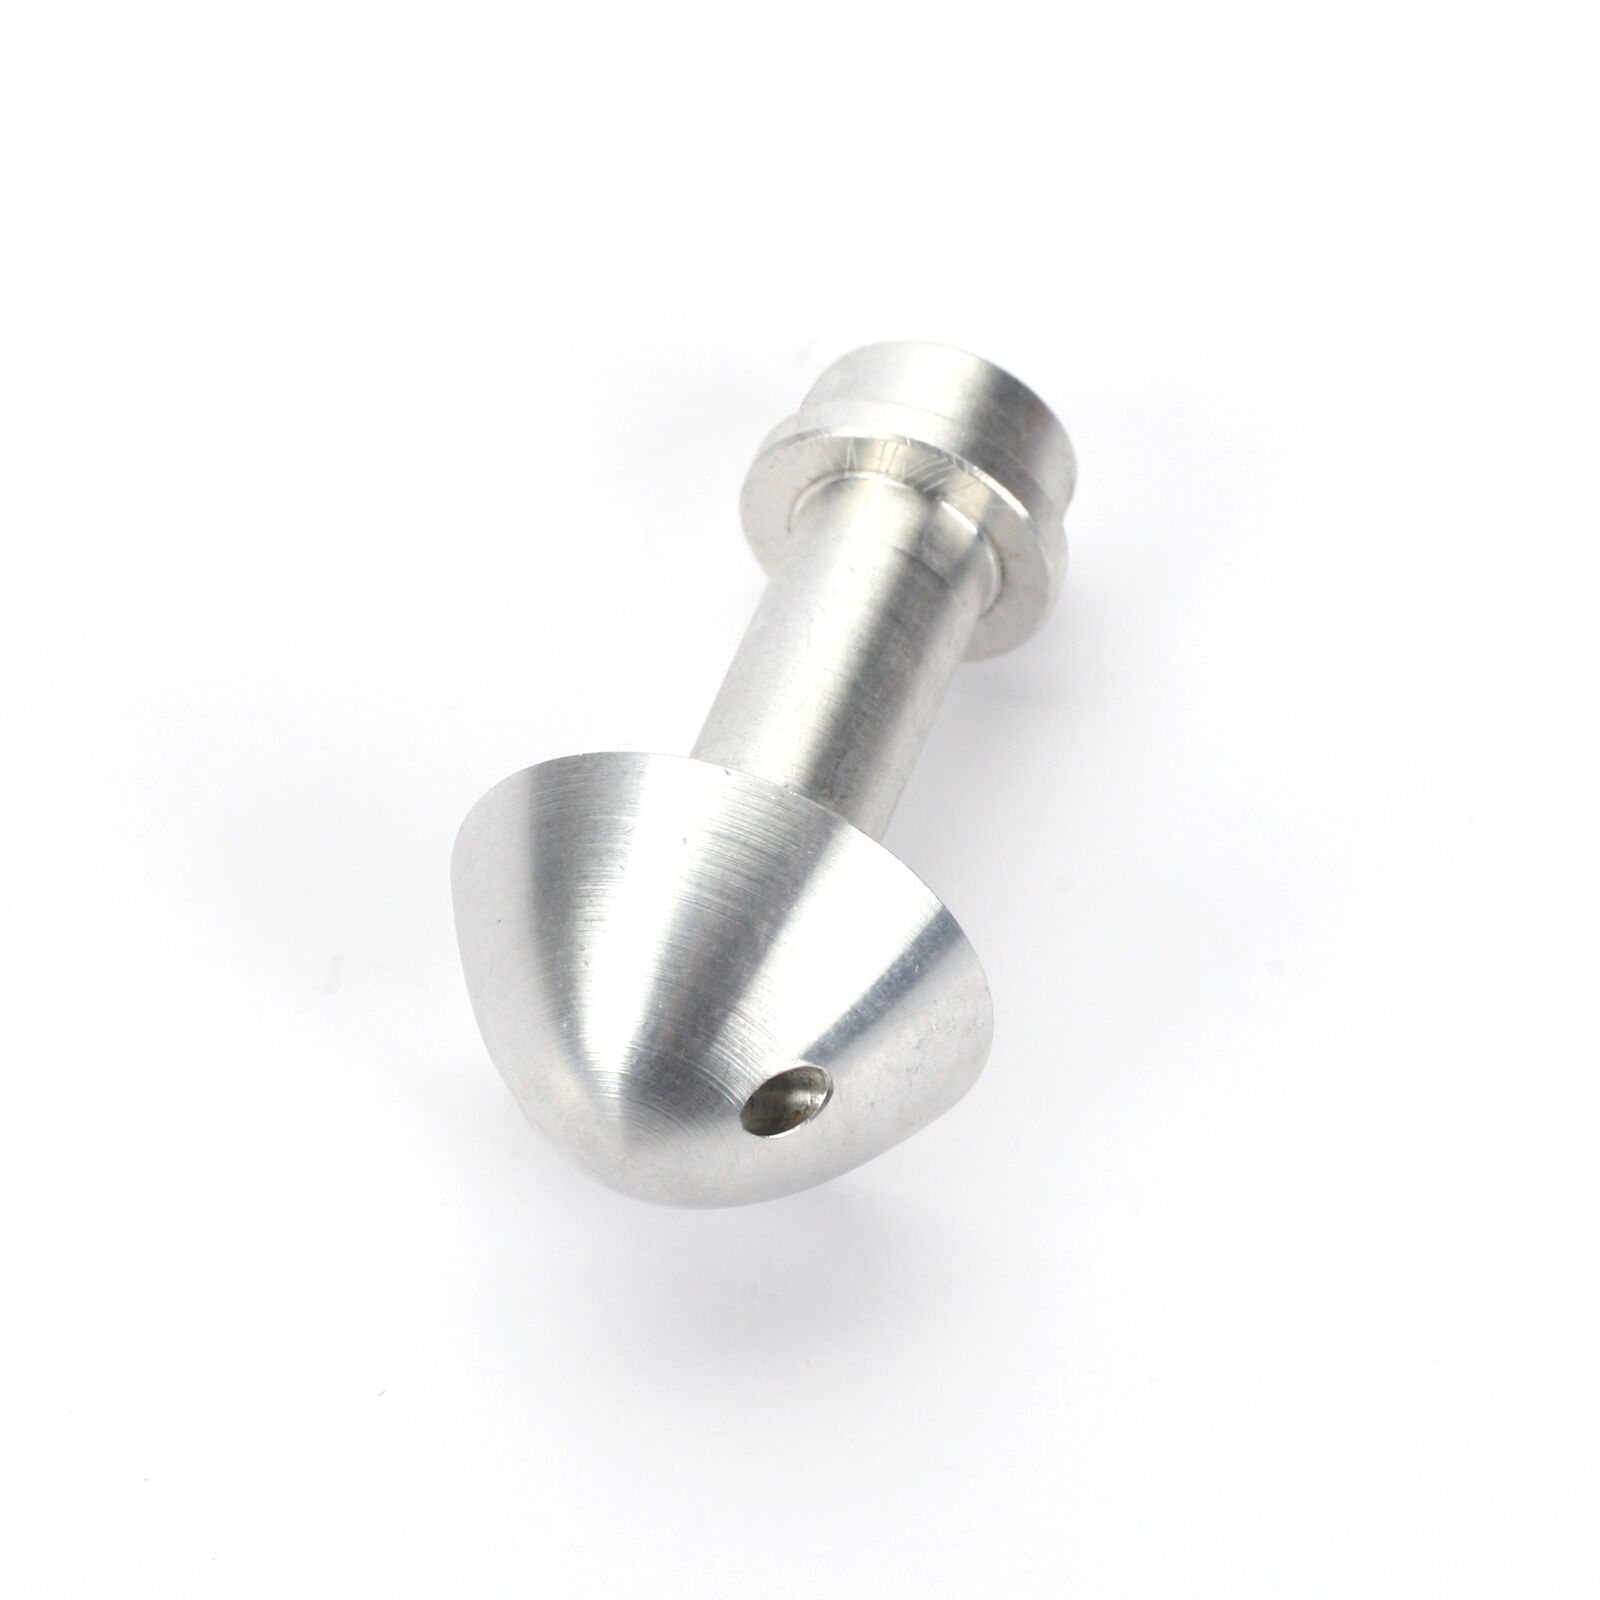 Aluminum Spinner Nut with Set Setscrew: Delta-V 32